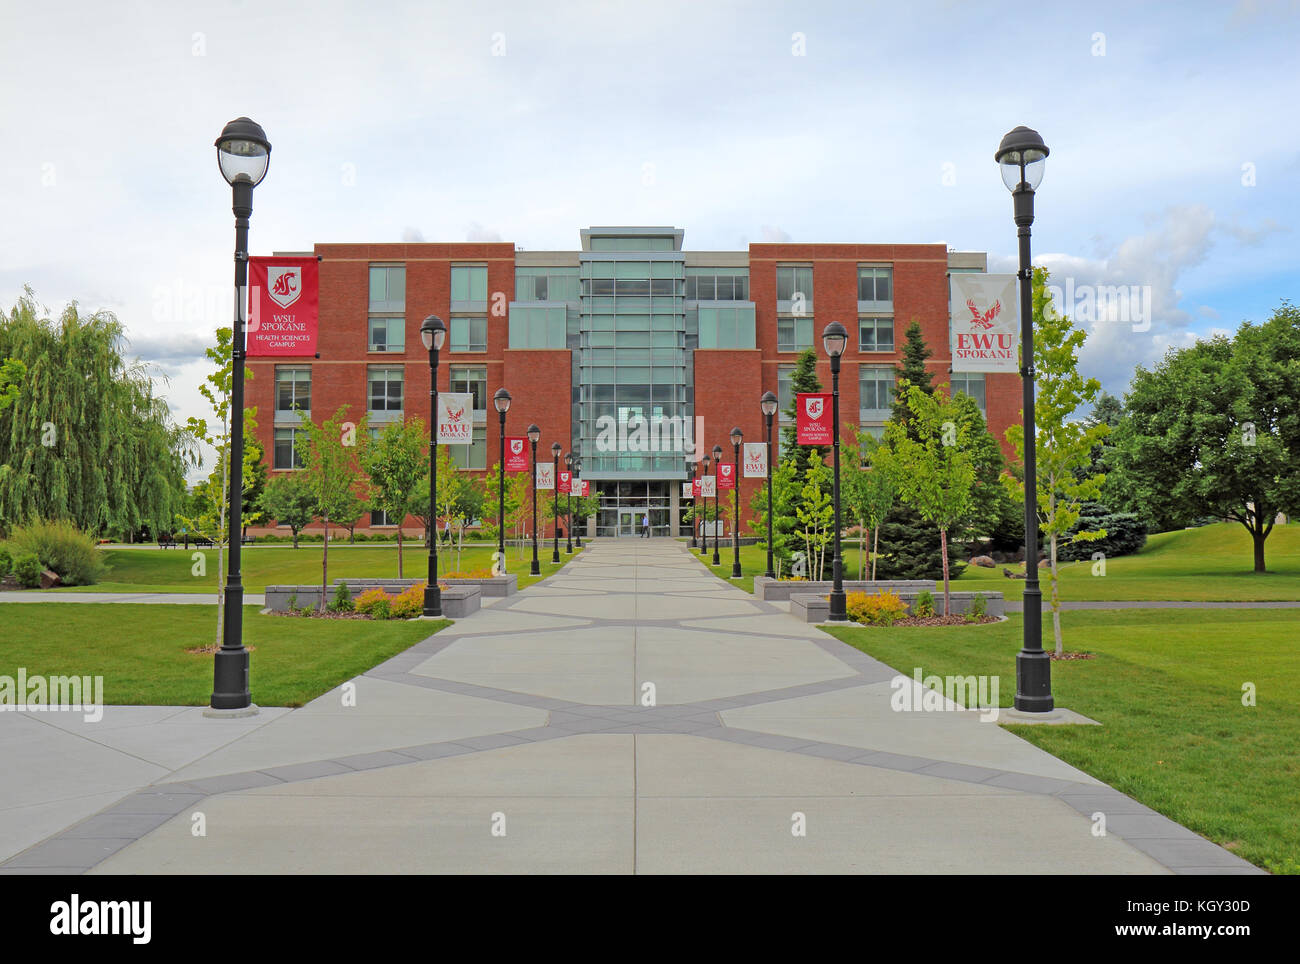 Spokane, Washington - 2. Juni 2016: Das akademische Zentrum Gebäude auf dem städtischen Campus der Washington State University Health Sciences Spokane, die offe Stockfoto